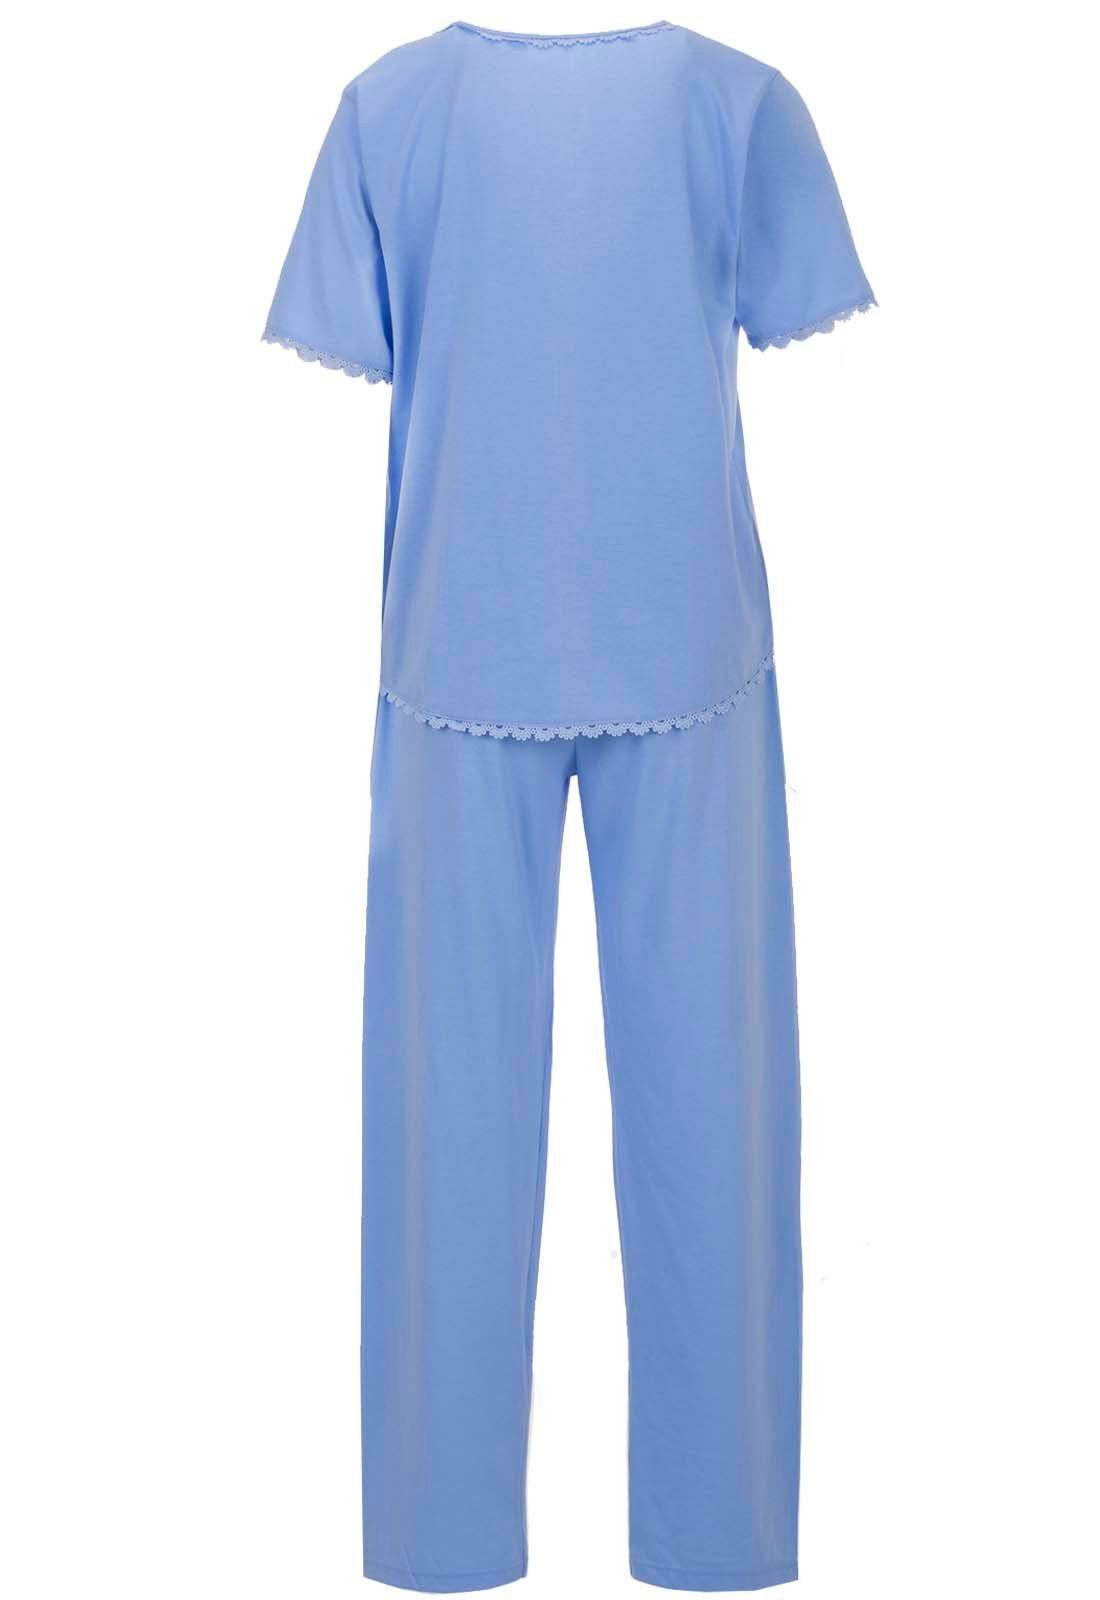 zeitlos Schlafanzug Pyjama Set Kurzarm Herz Spitze blau 